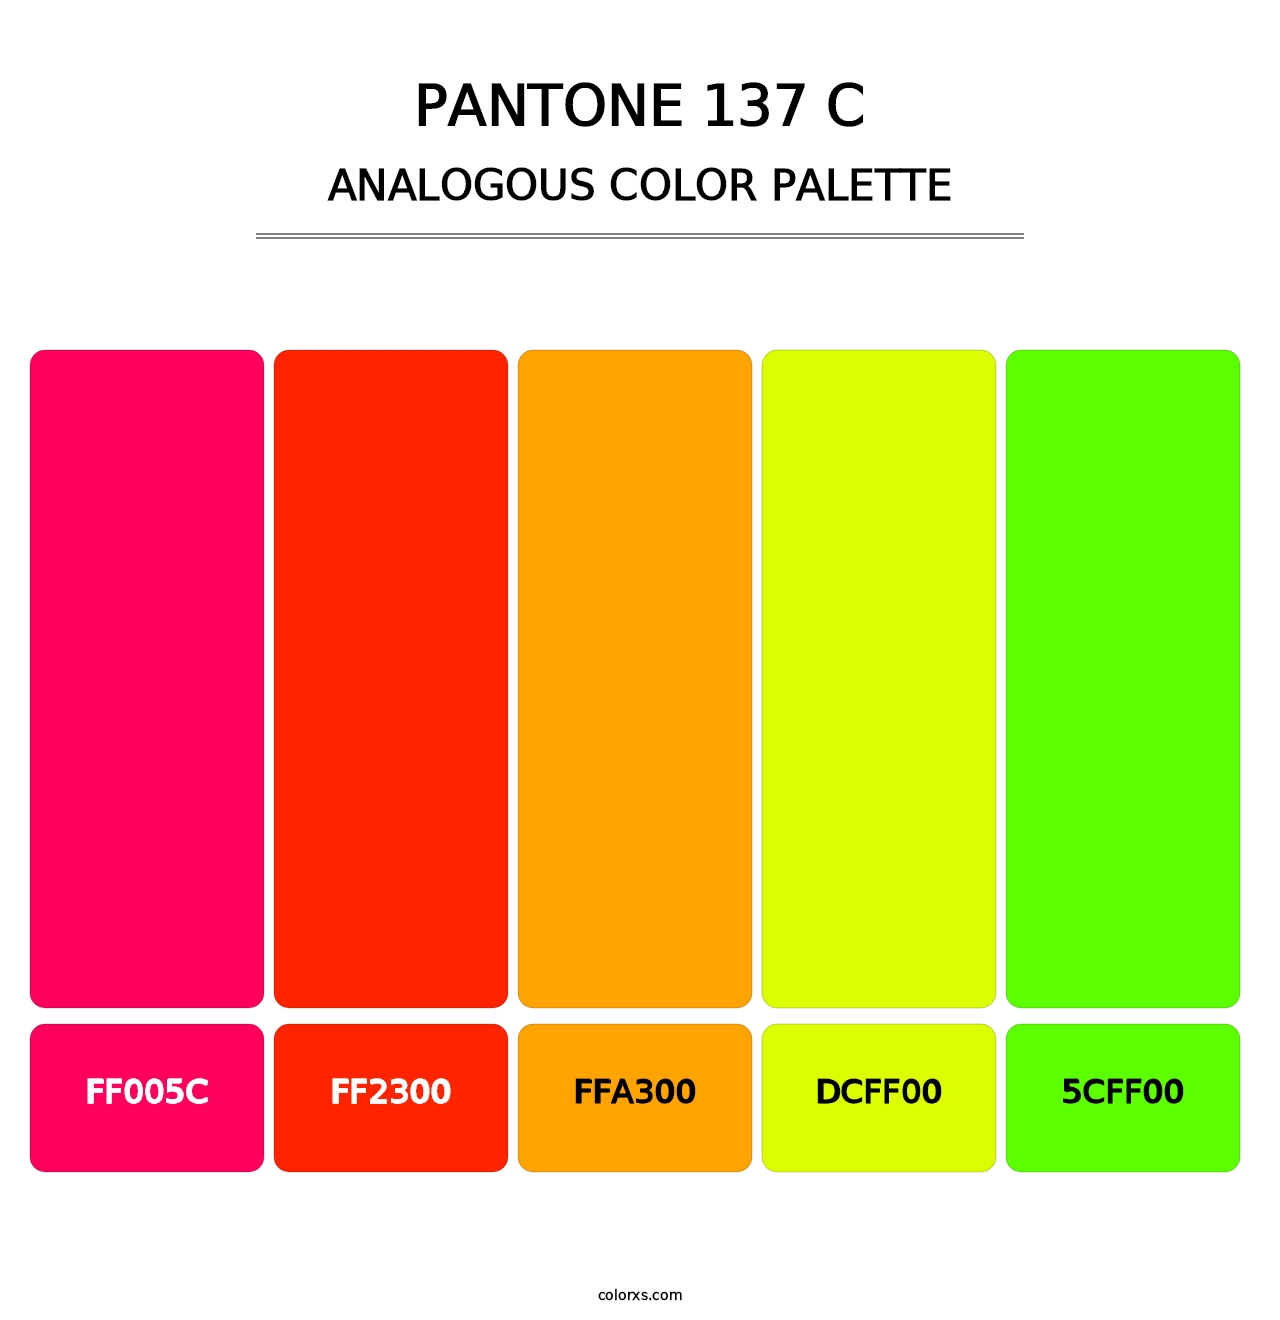 PANTONE 137 C - Analogous Color Palette